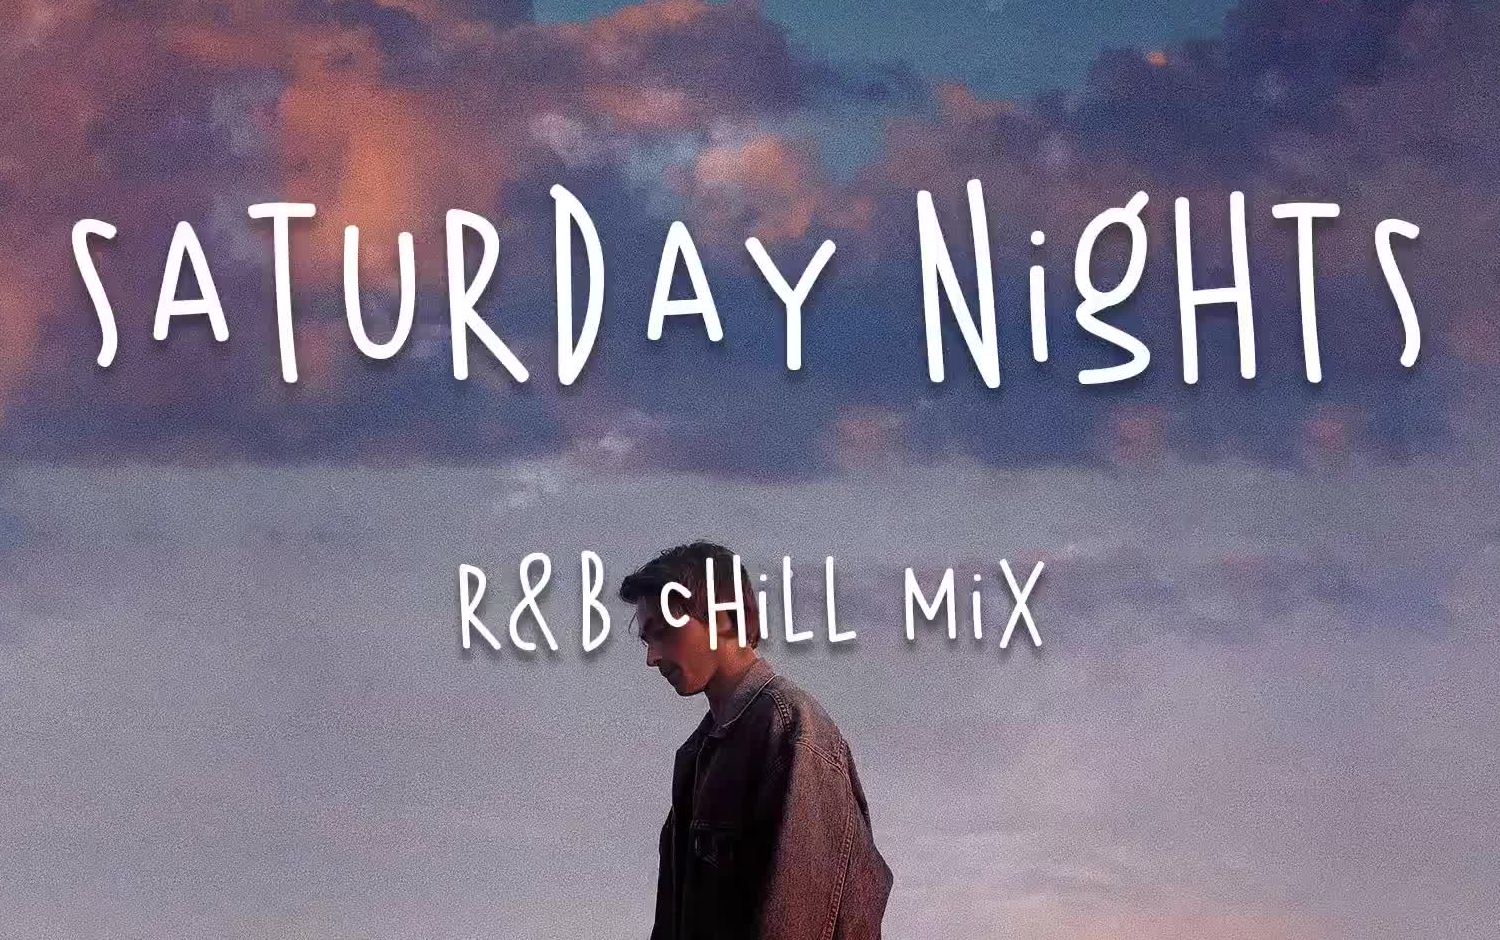 [playlist] 周末晚上放松听的R&B歌单 R&B Chill Playlist